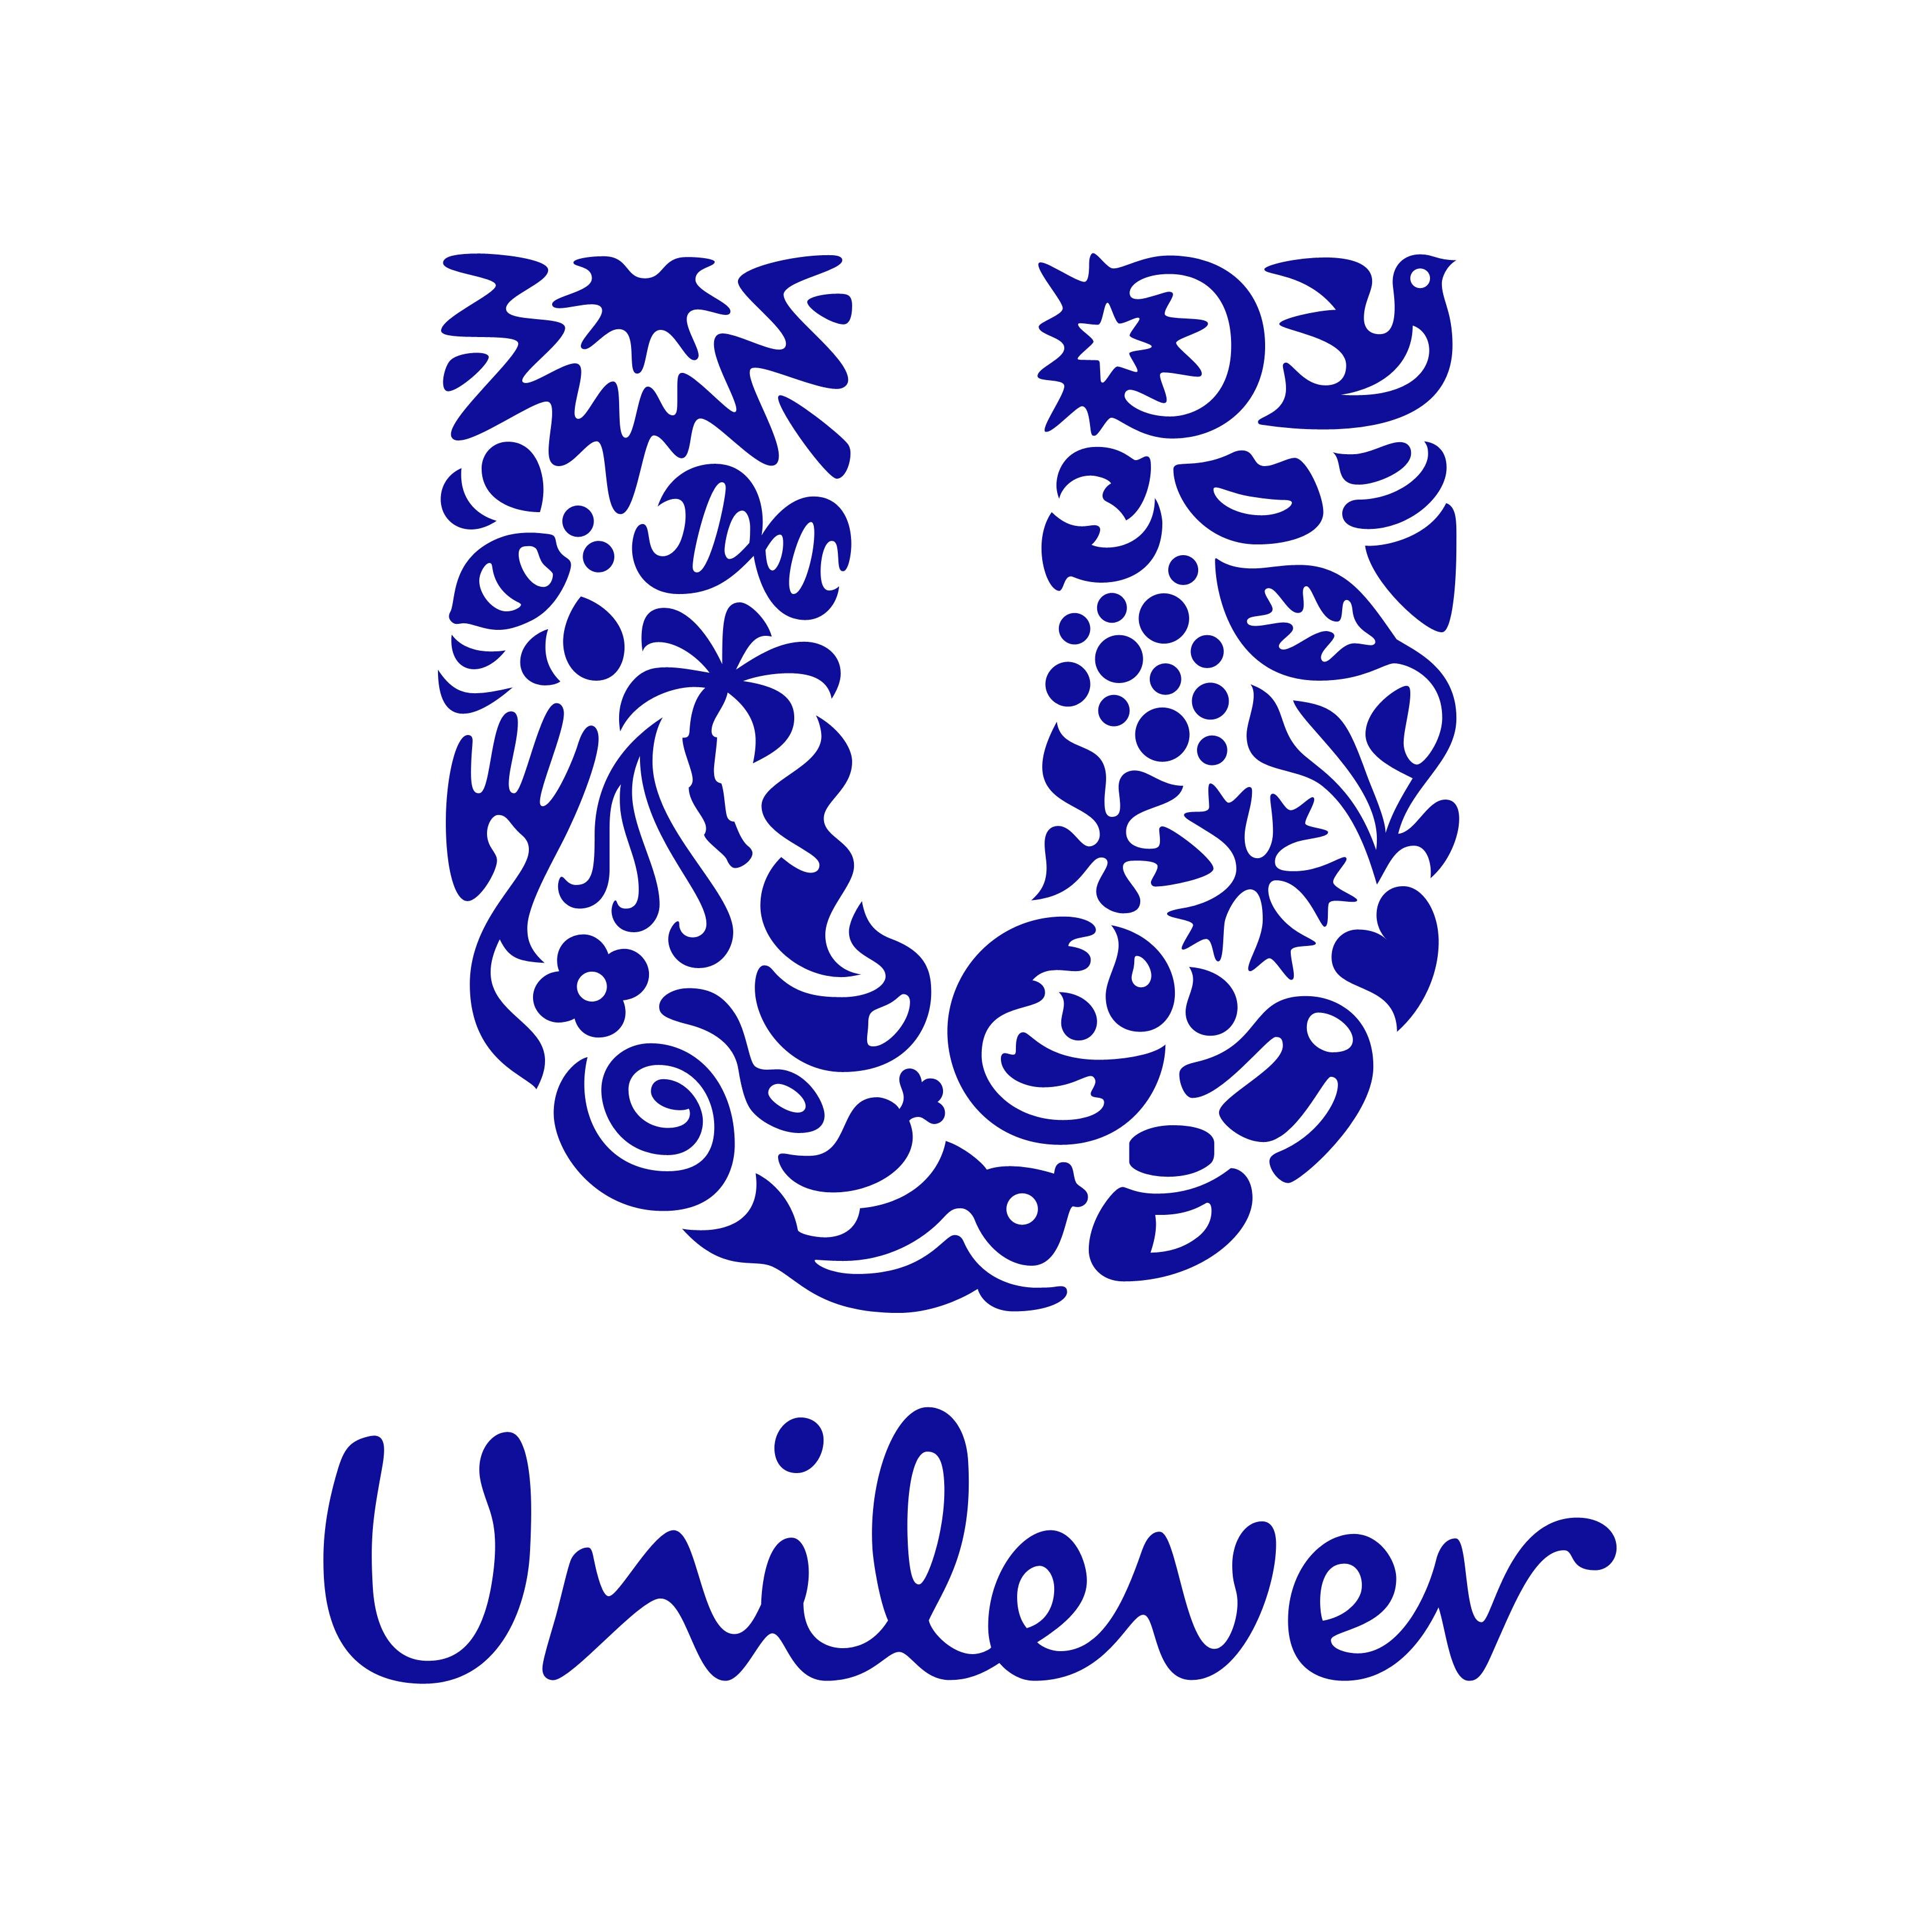 Az iparág legfenntarthatóbb vállalata lett az Unilever